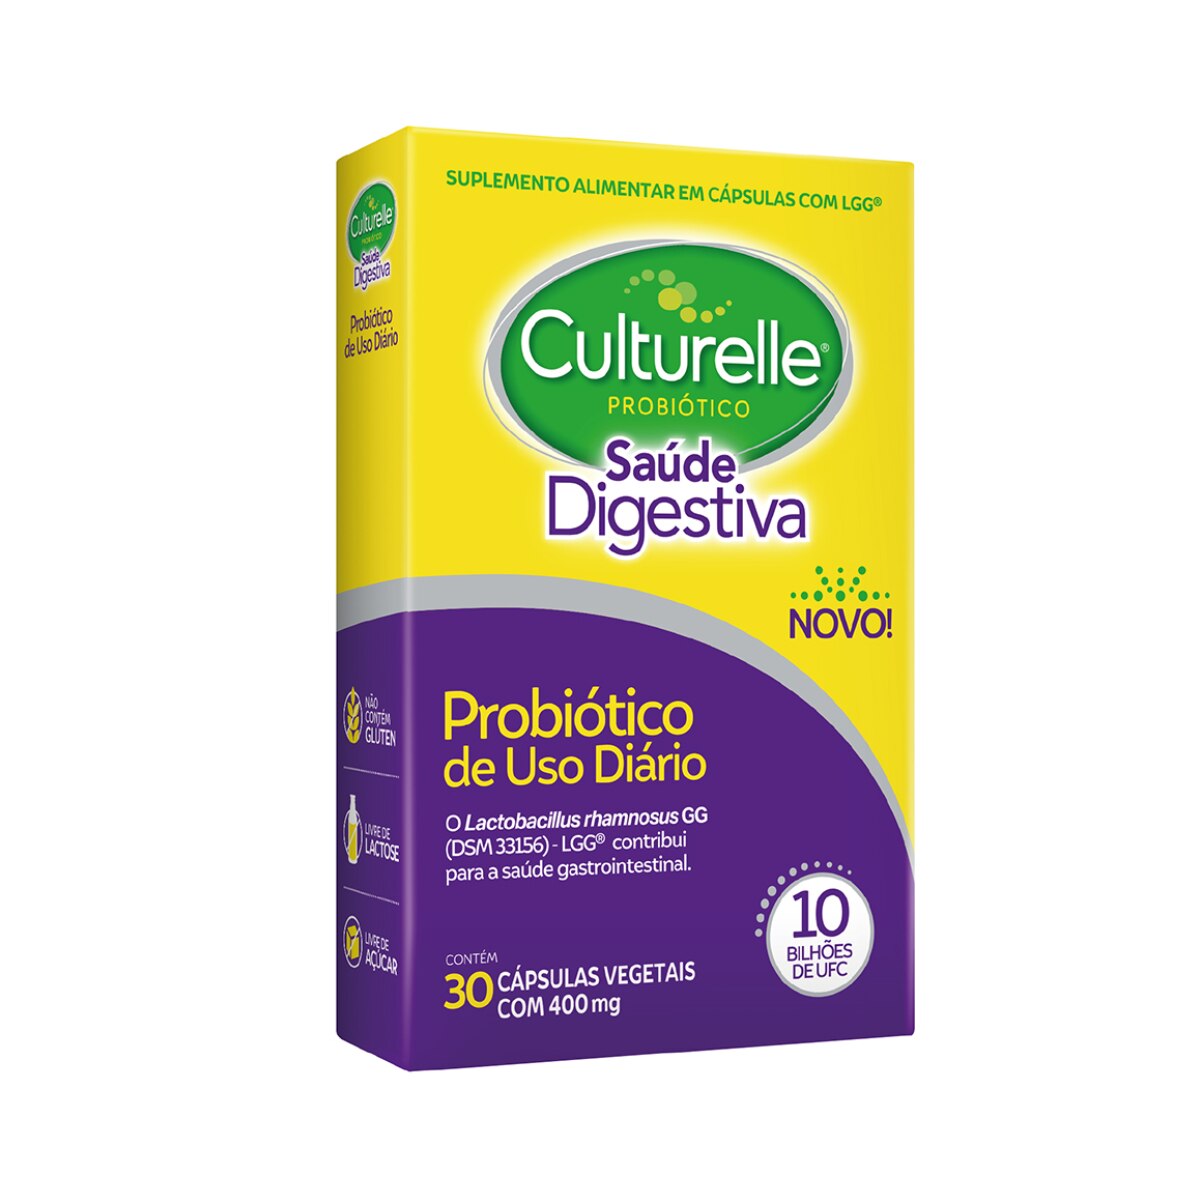 Culturelle Probiotico Saude Digestiva 30 Capsulas Vegetais